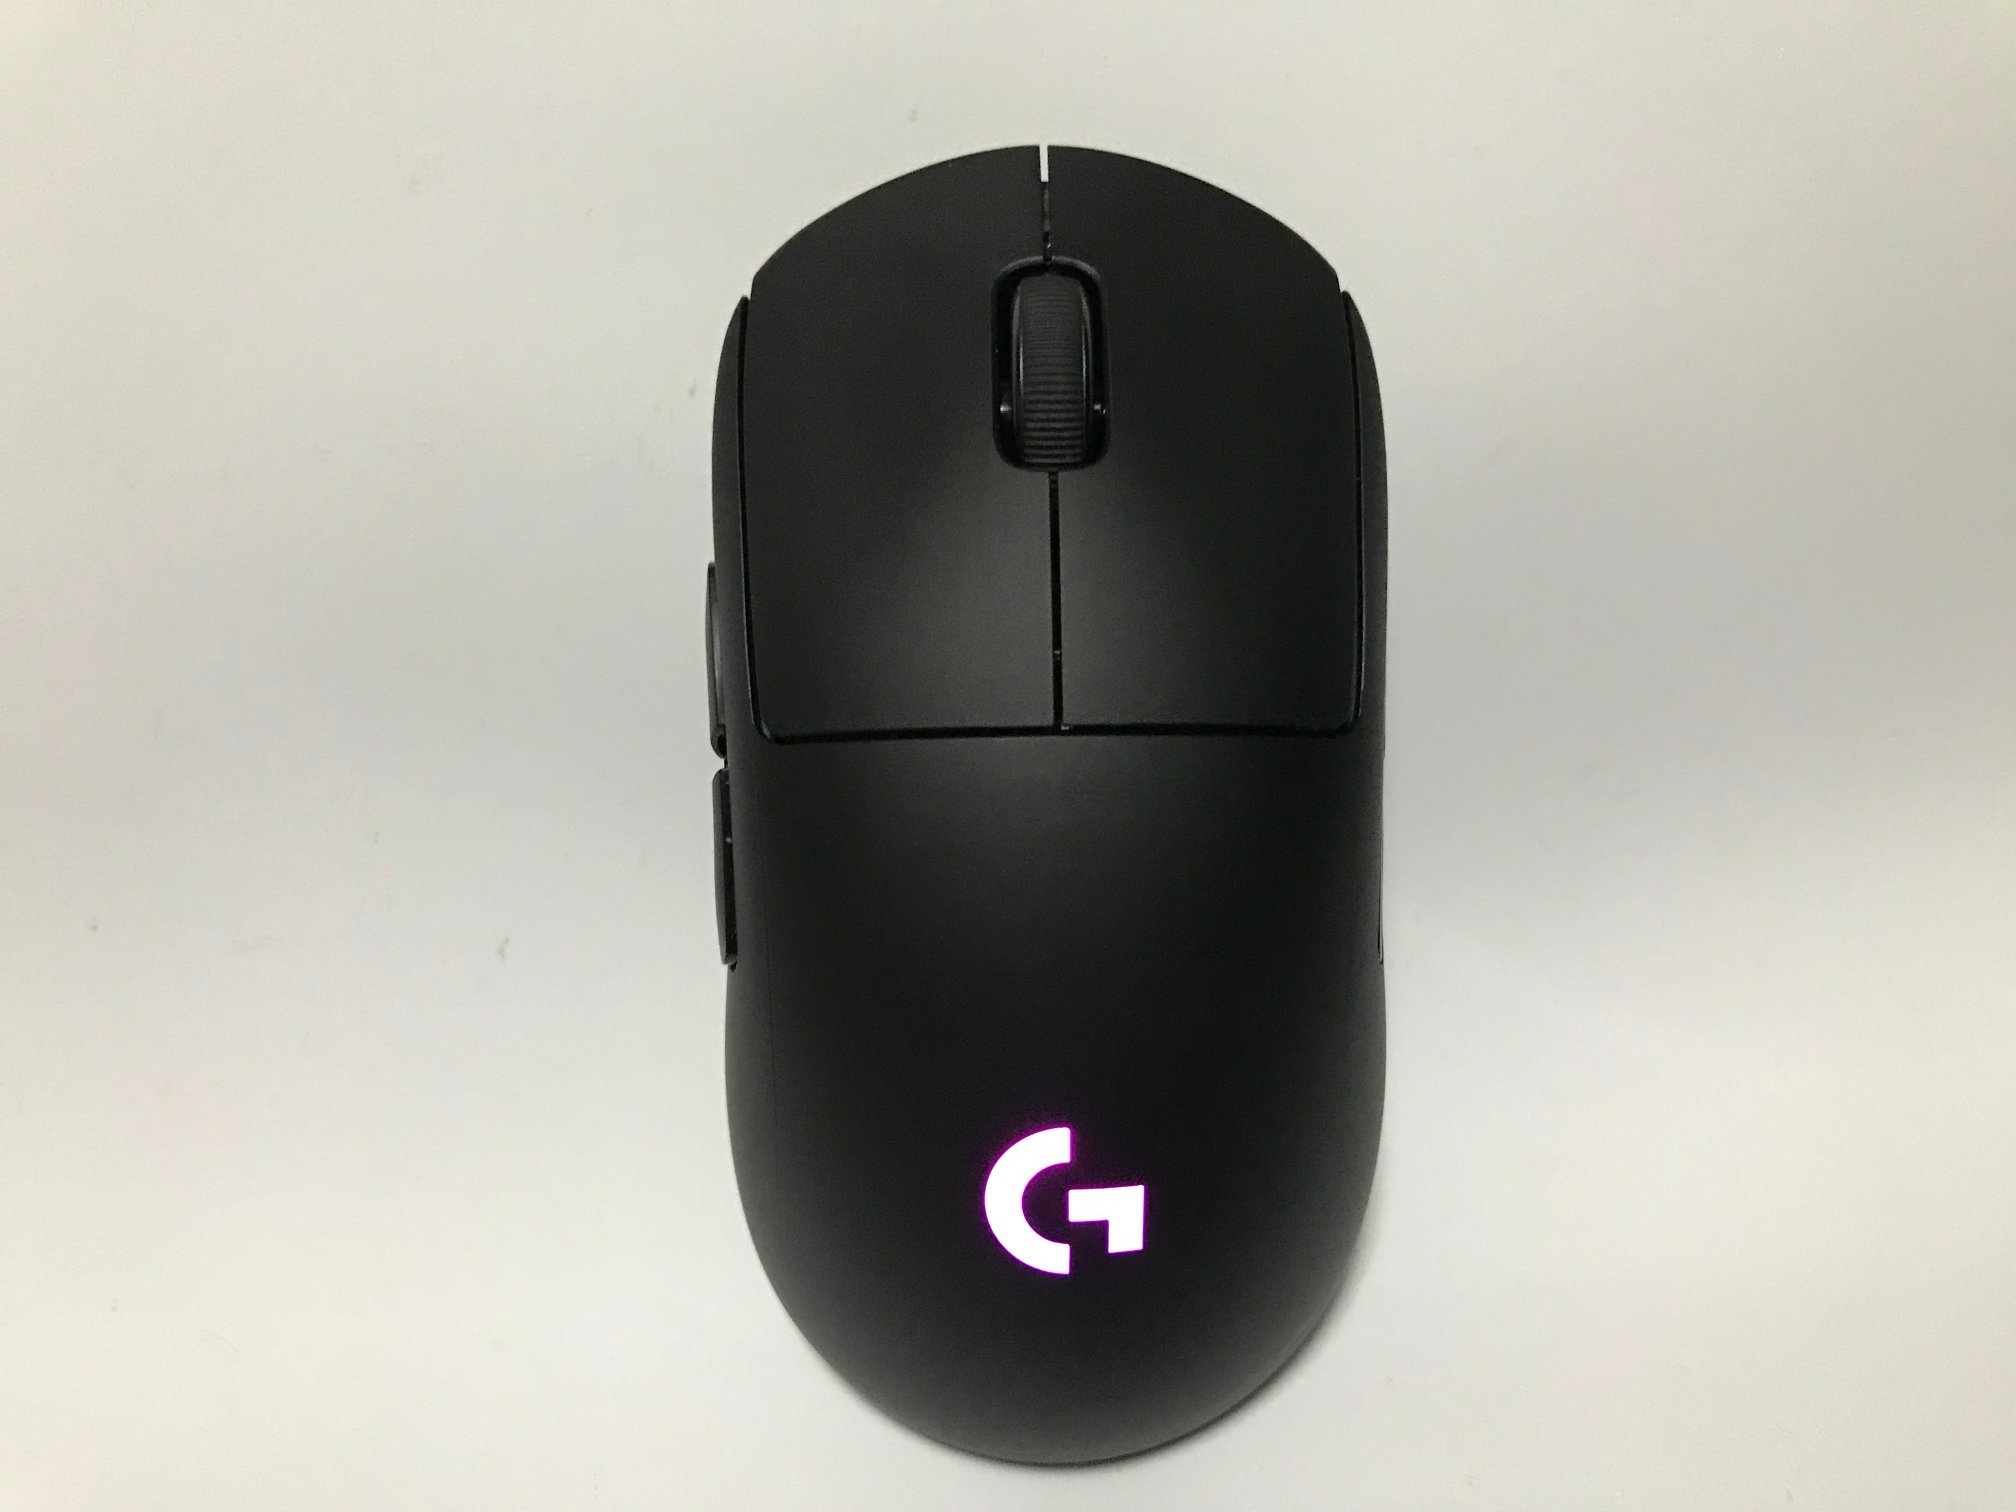 Logicool G Pro Wirelessマウスレビュー 神マウスと呼ばれる程の完璧なマウスだった ぷちろぐ